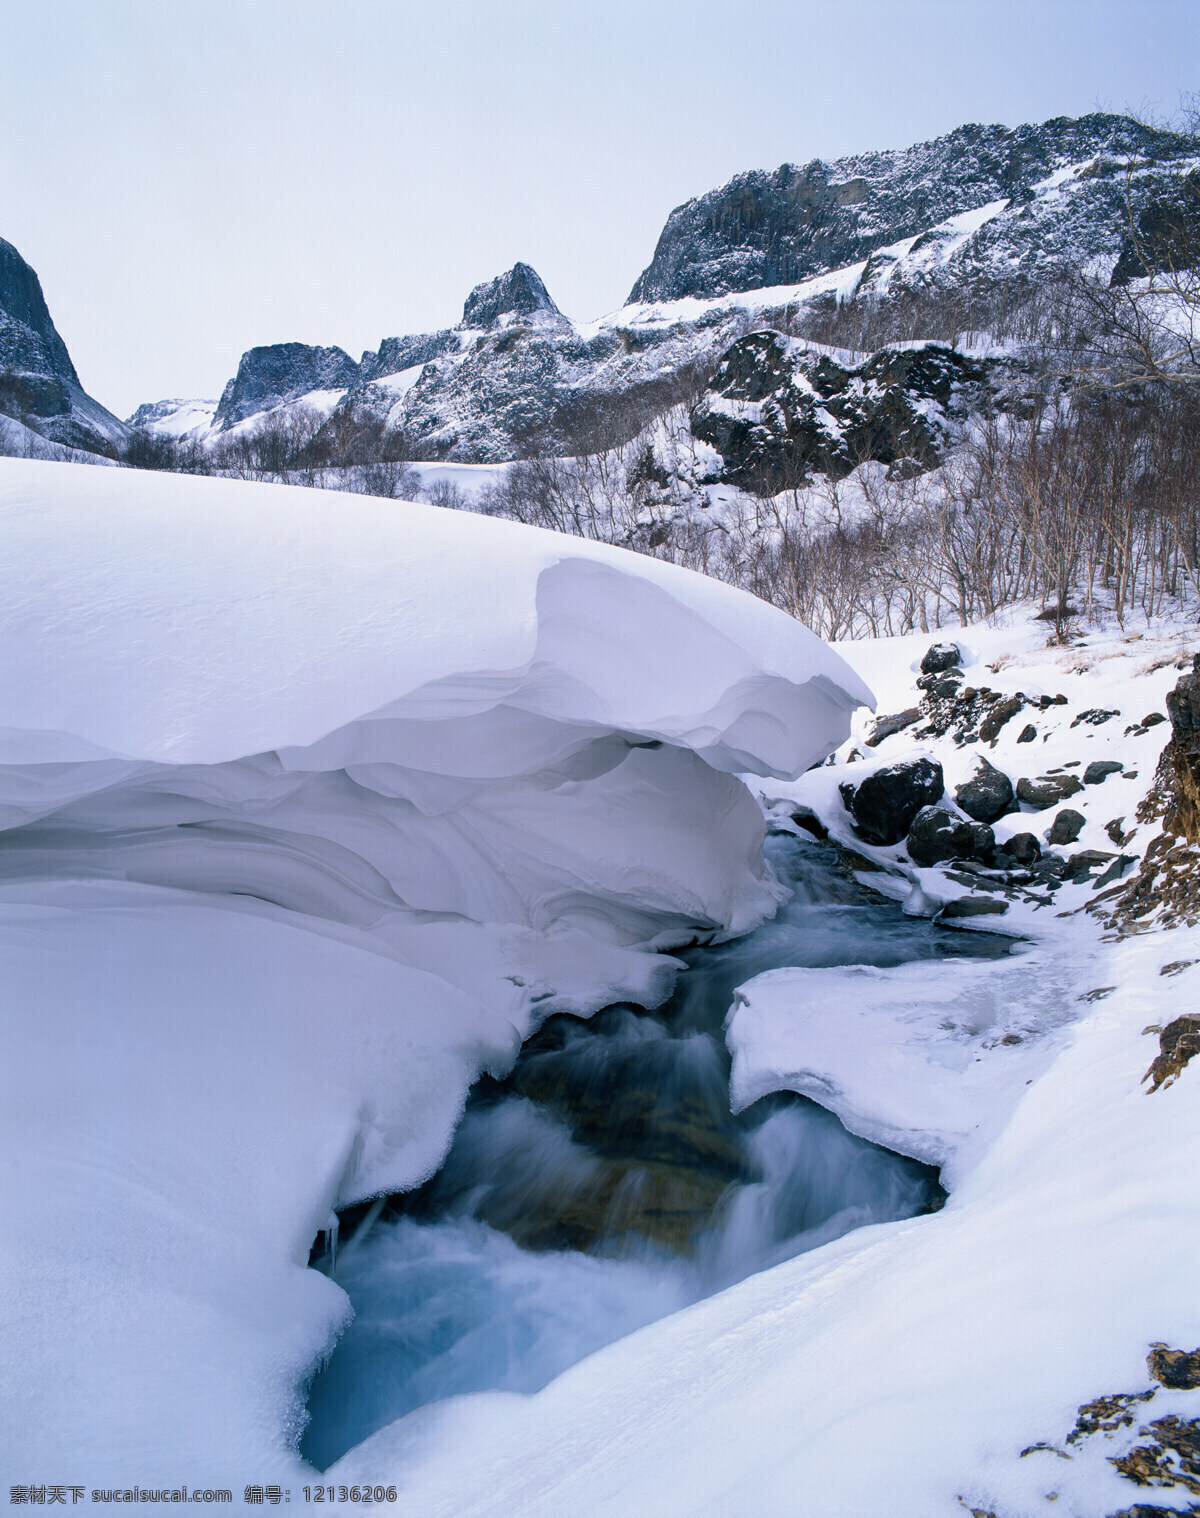 雪山 树木 景观 高山 大雪 洁白 岩石 峭壁 冰冻 河流 景色 高清图片 山水风景 风景图片